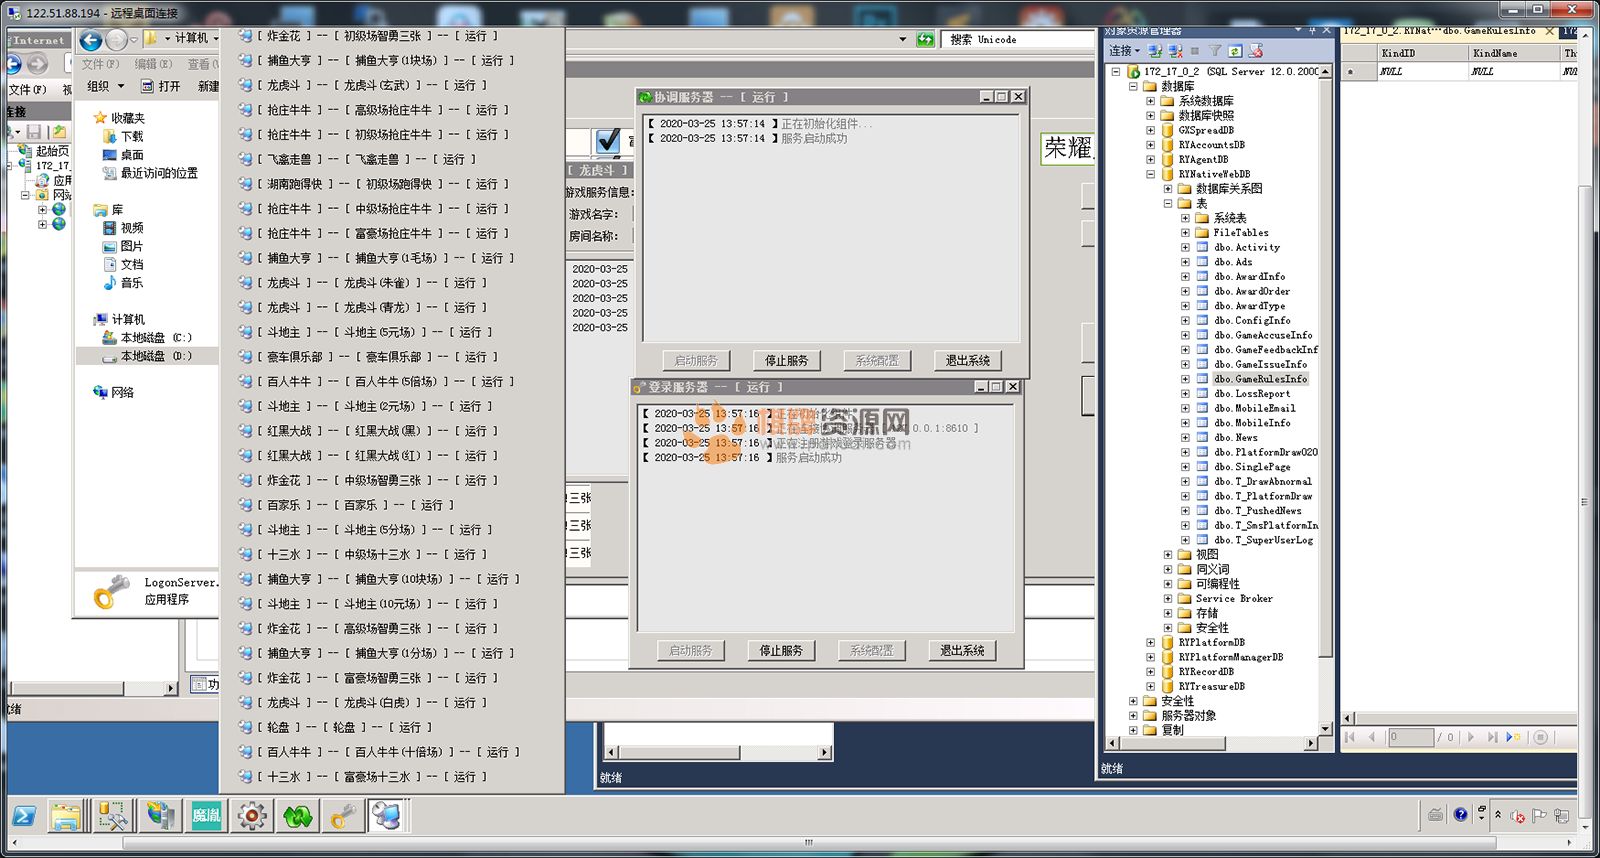 微星二次开发版本天降横财棋牌游戏1:1�w钱平台全套完整运营级程序组件（真人视讯+控制+数据库）